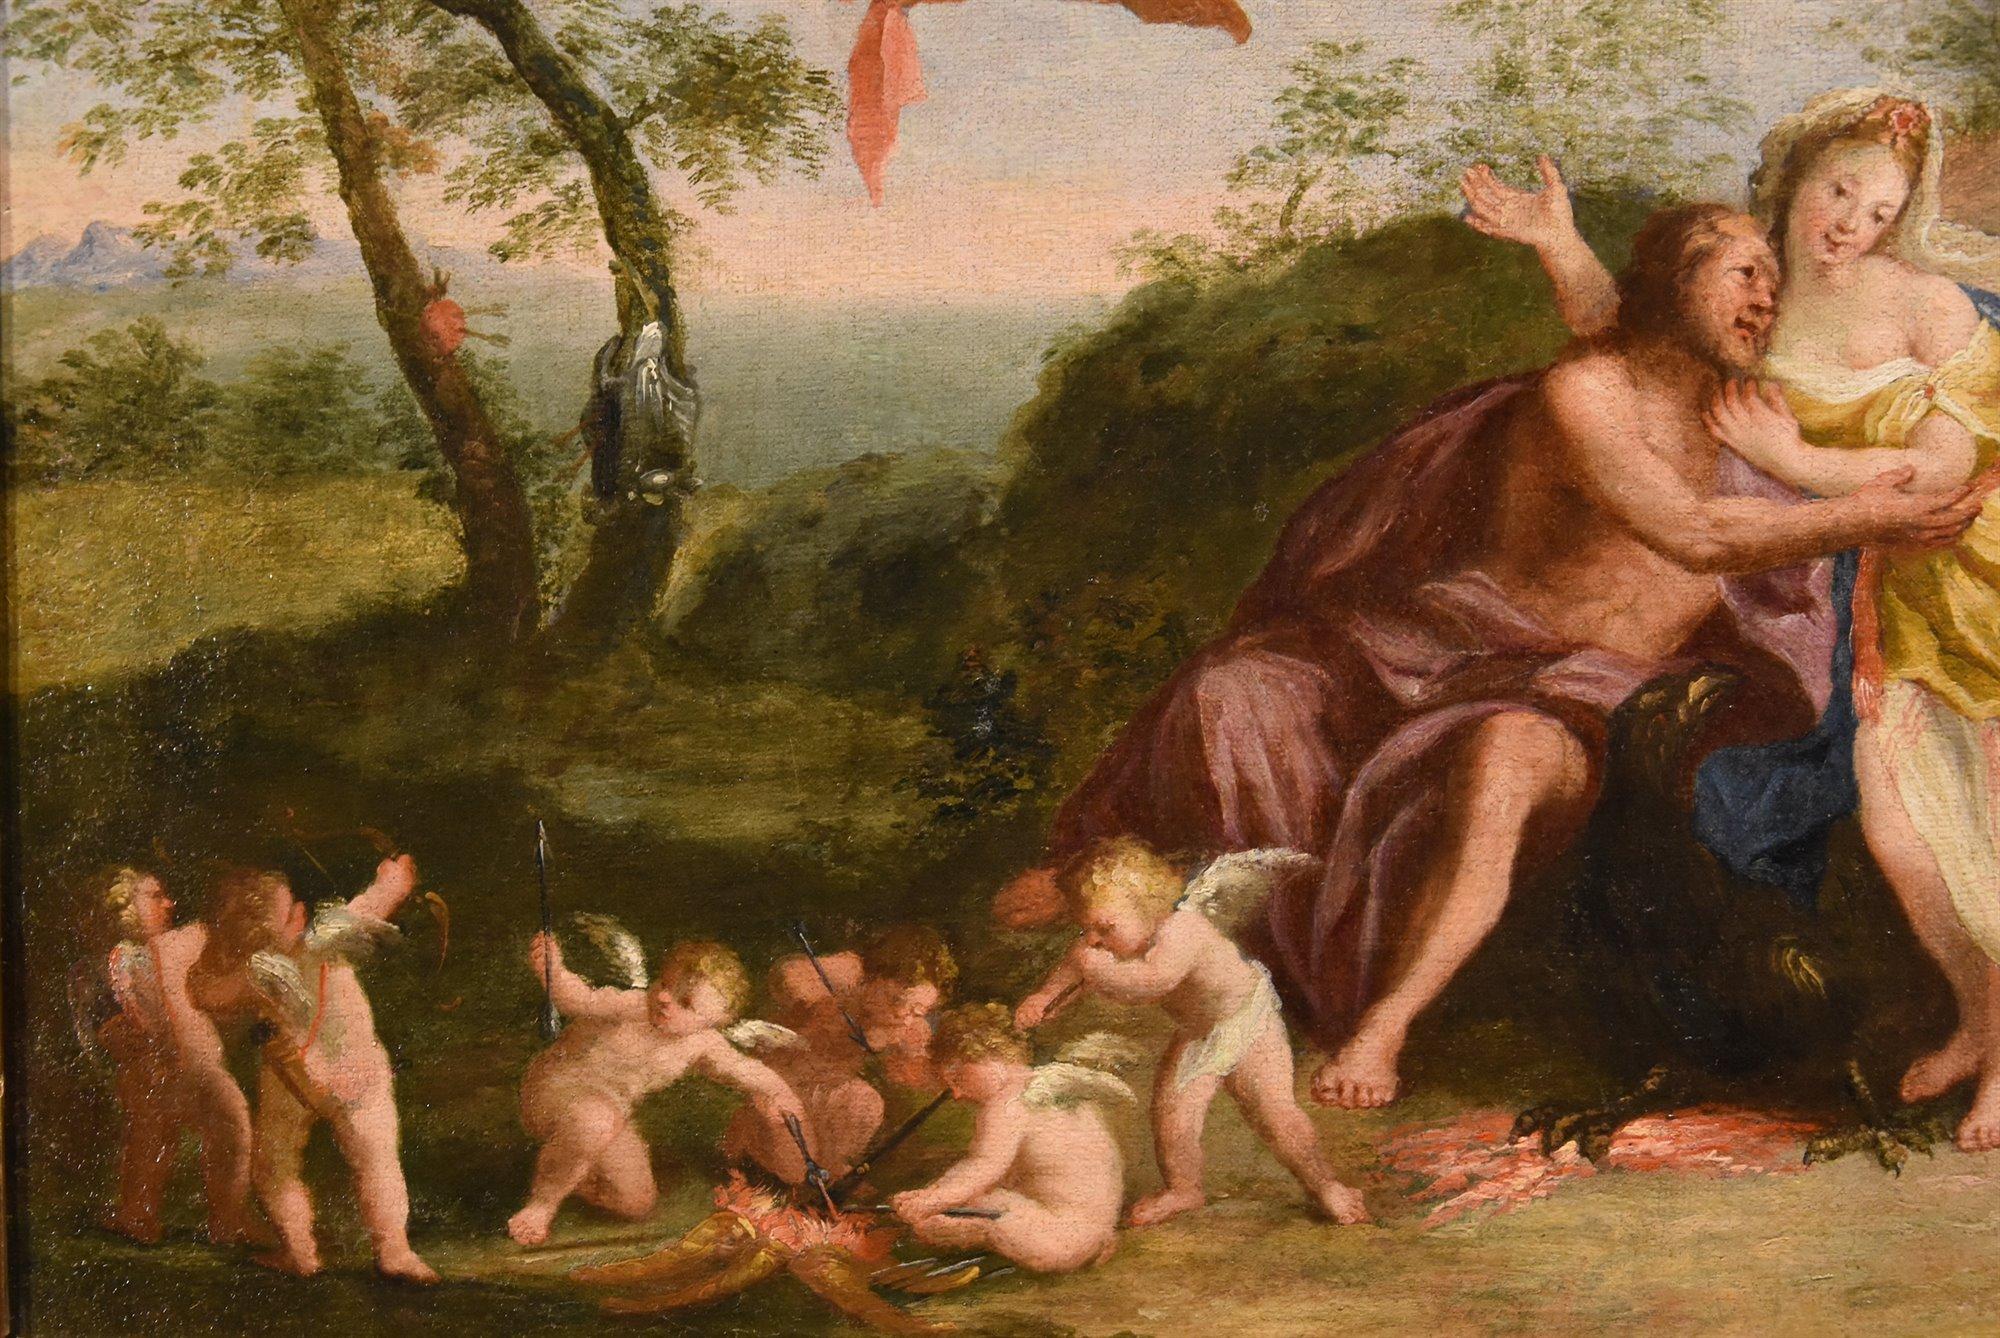 Mars Venus Albani Paint Oil on canvas 17th Century Old master Mythological For Sale 4